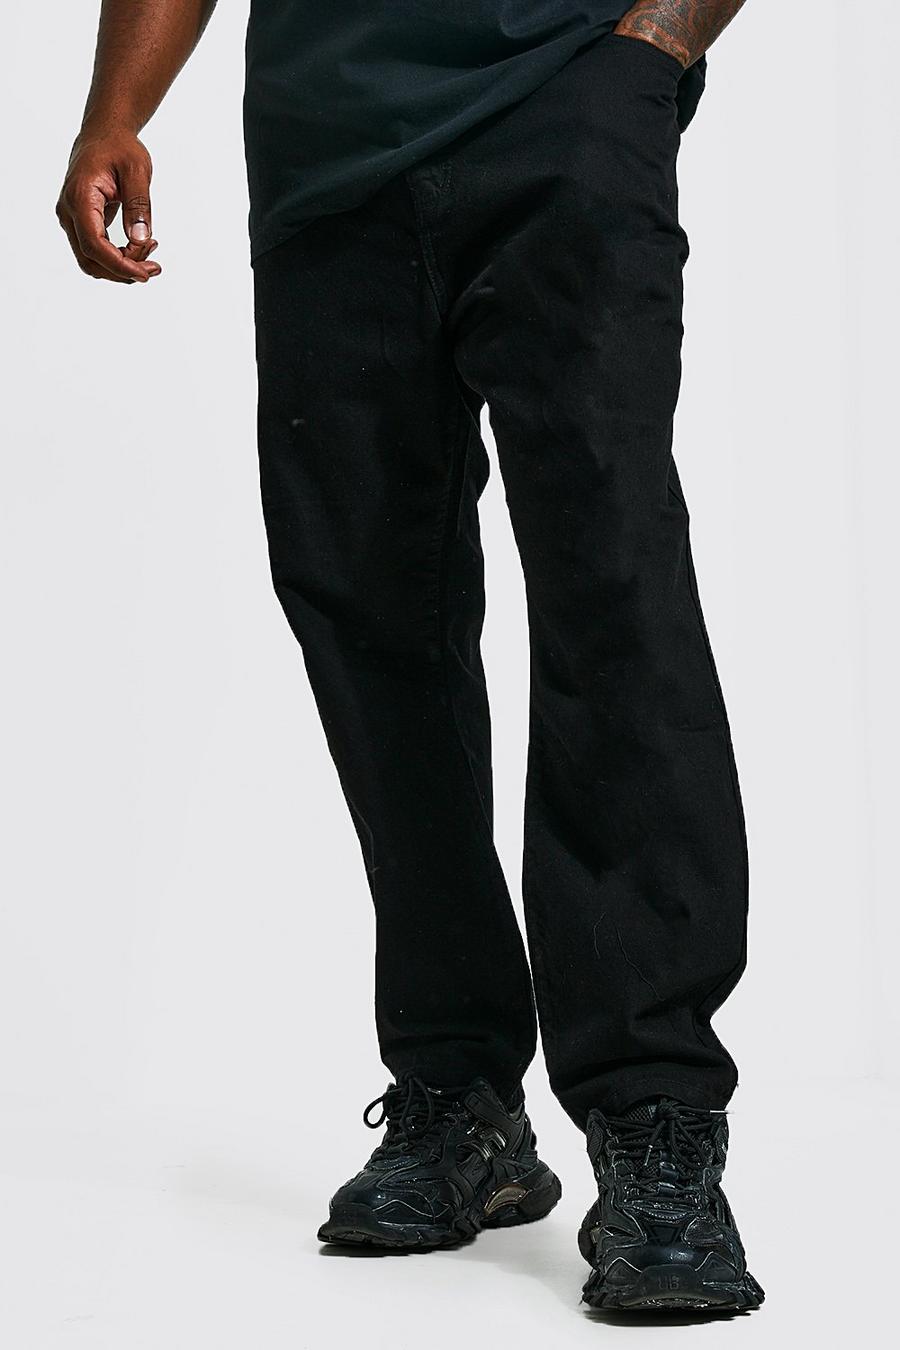 שחור אמיתי ג'ינס בגזרה צרה בשילוב פוליאסטר ממוחזר, מידות גדולות